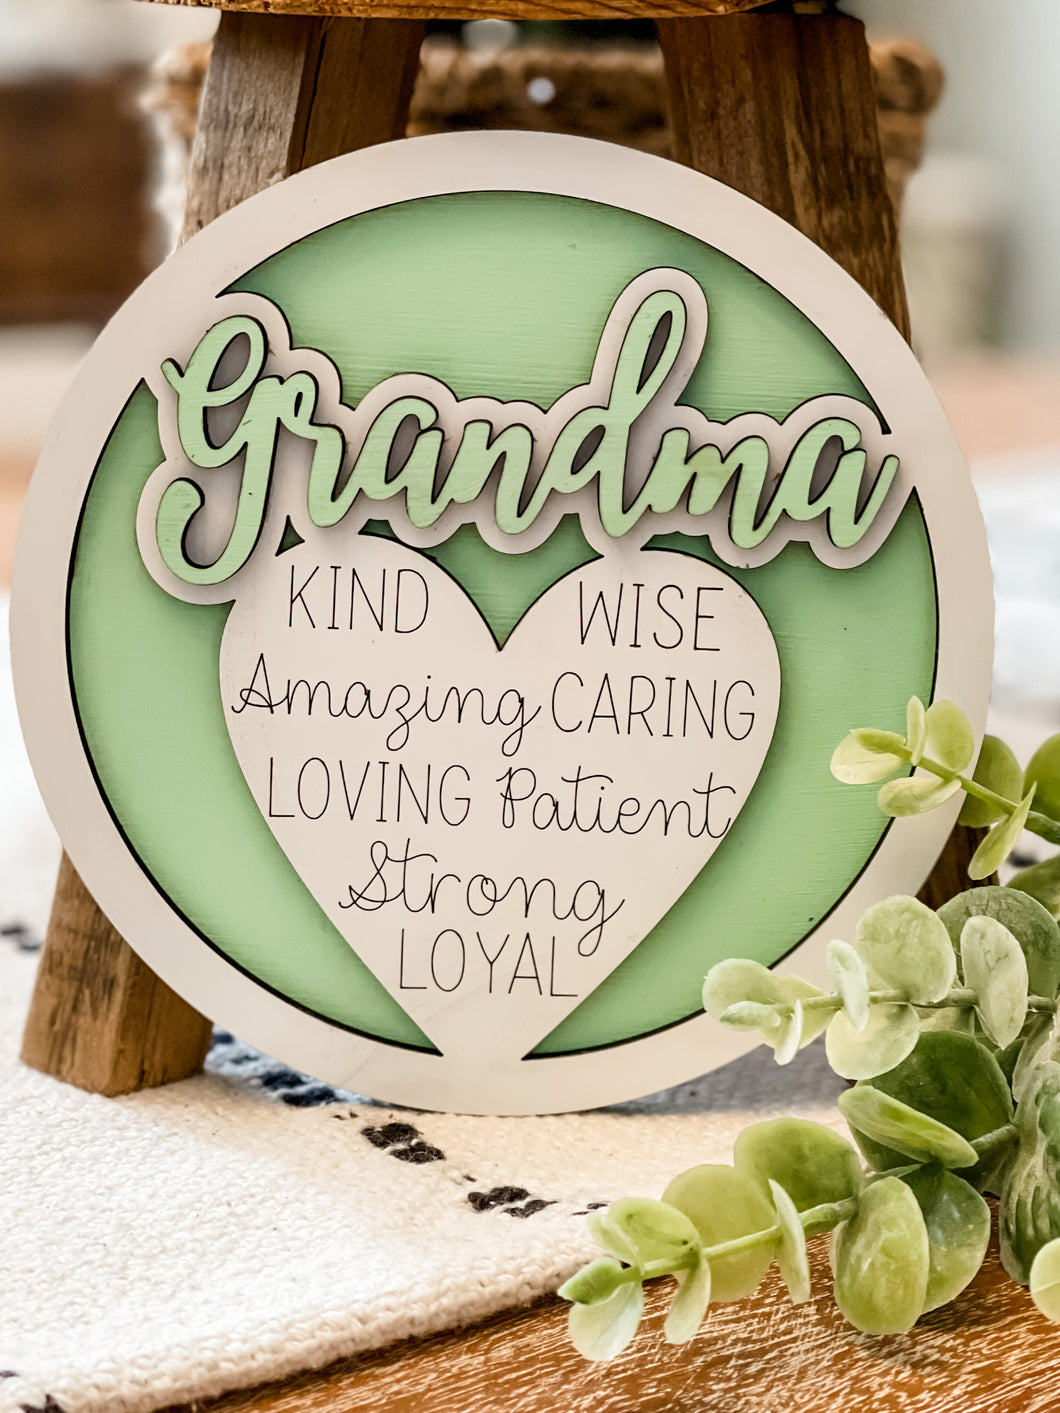 Grandma and/or Granny Mini Round Sign